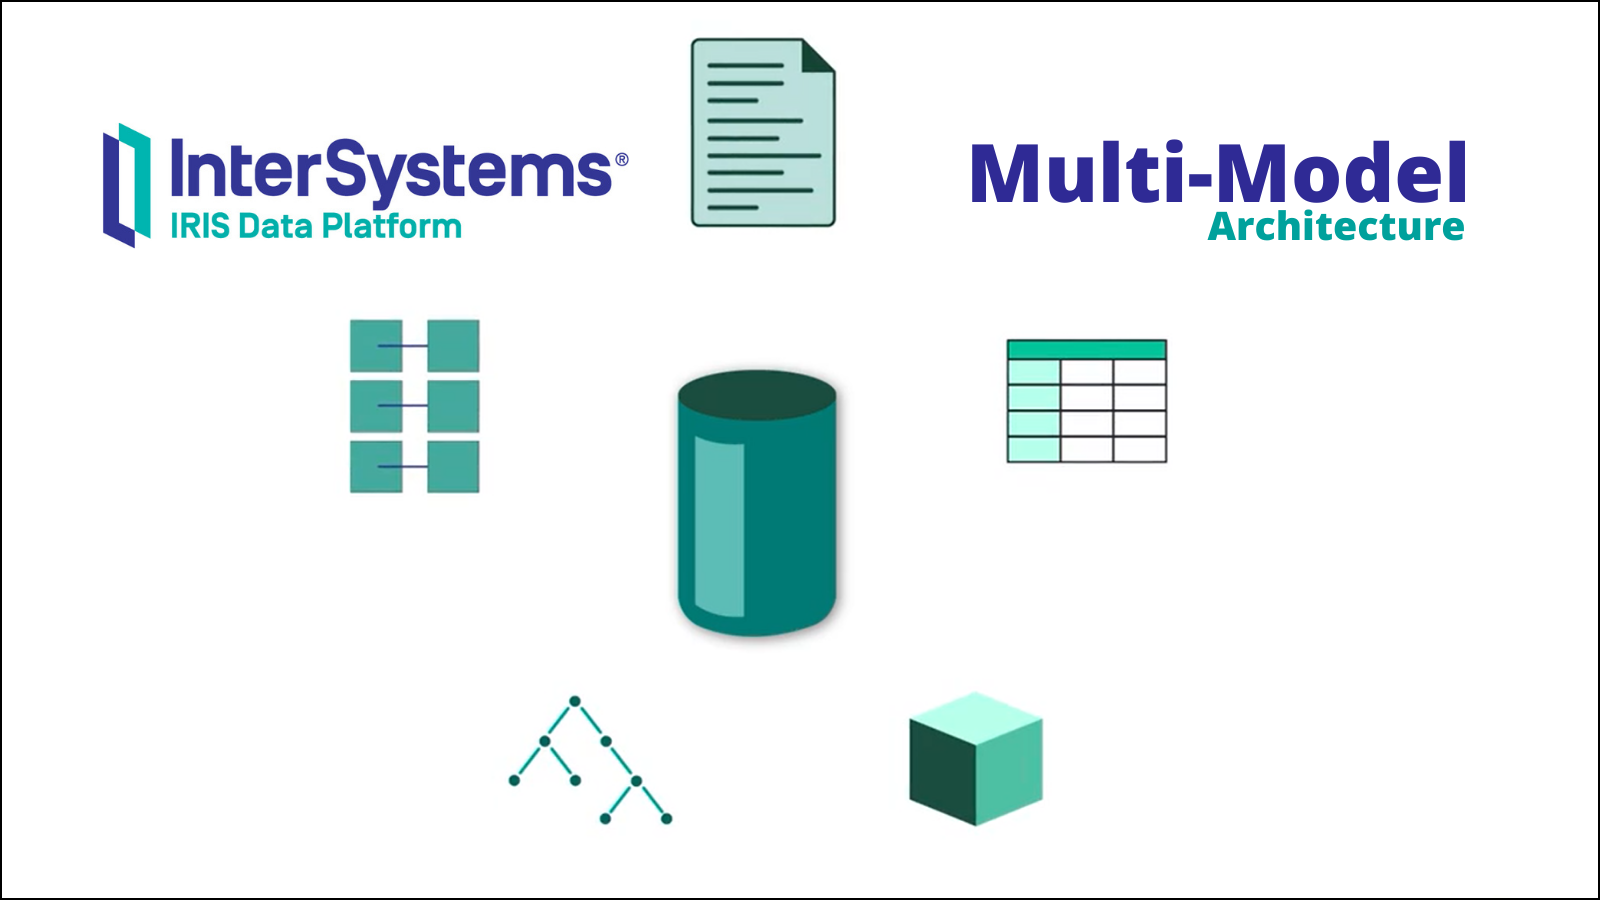 Multi-Model Architecture in InterSystems IRIS